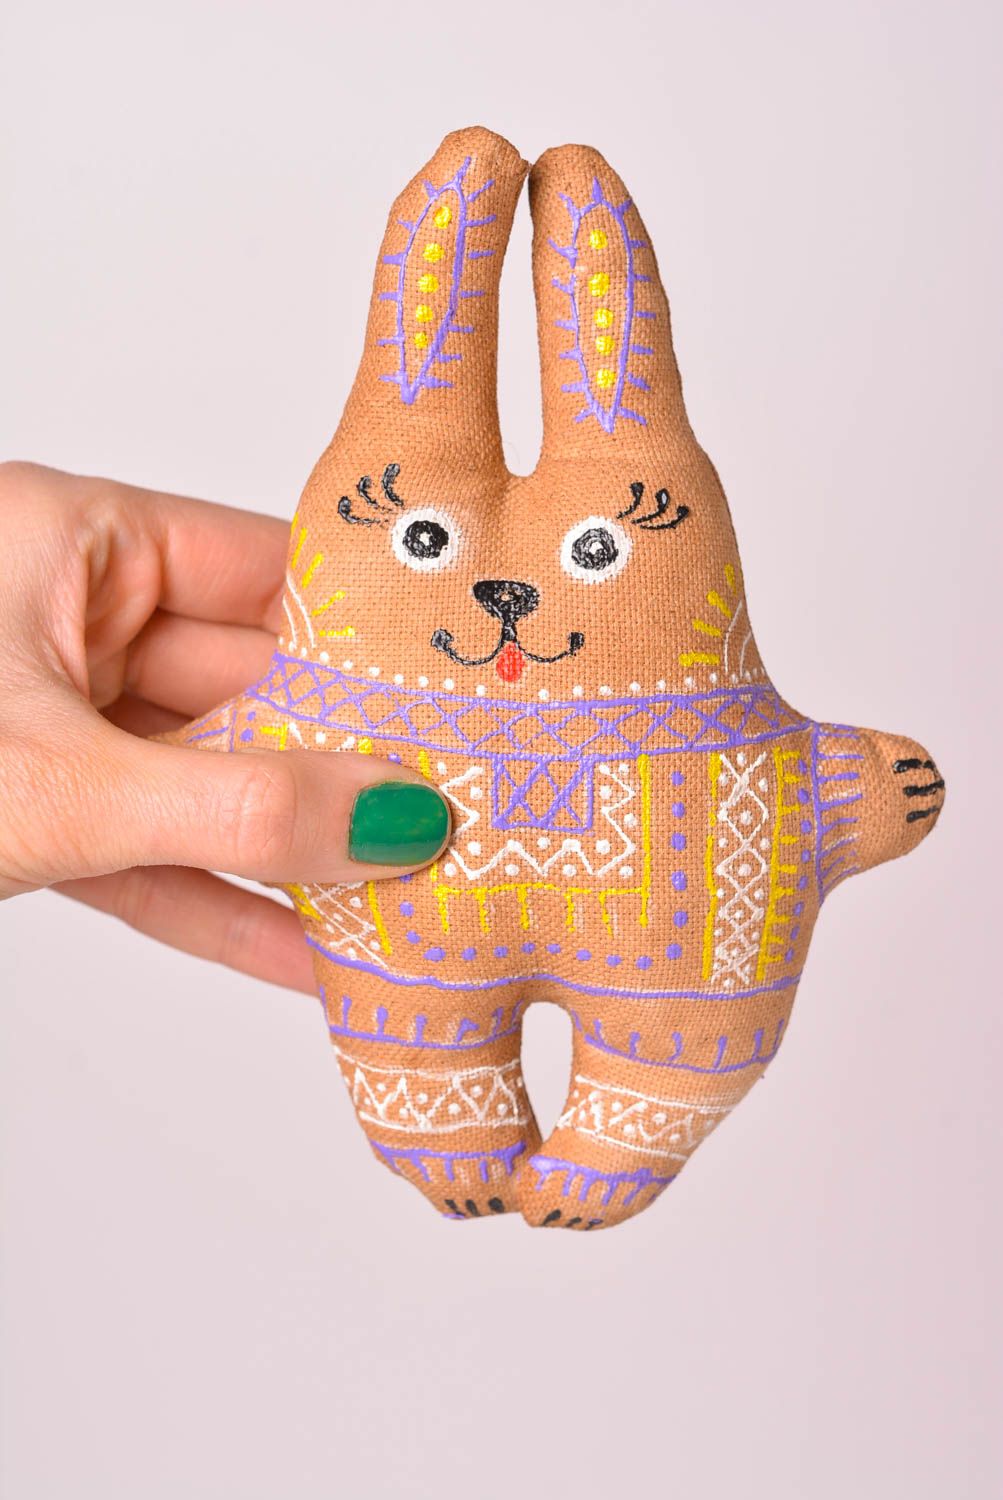 Игрушка ручной работы оригинальная игрушка расписной кролик интересный подарок фото 2